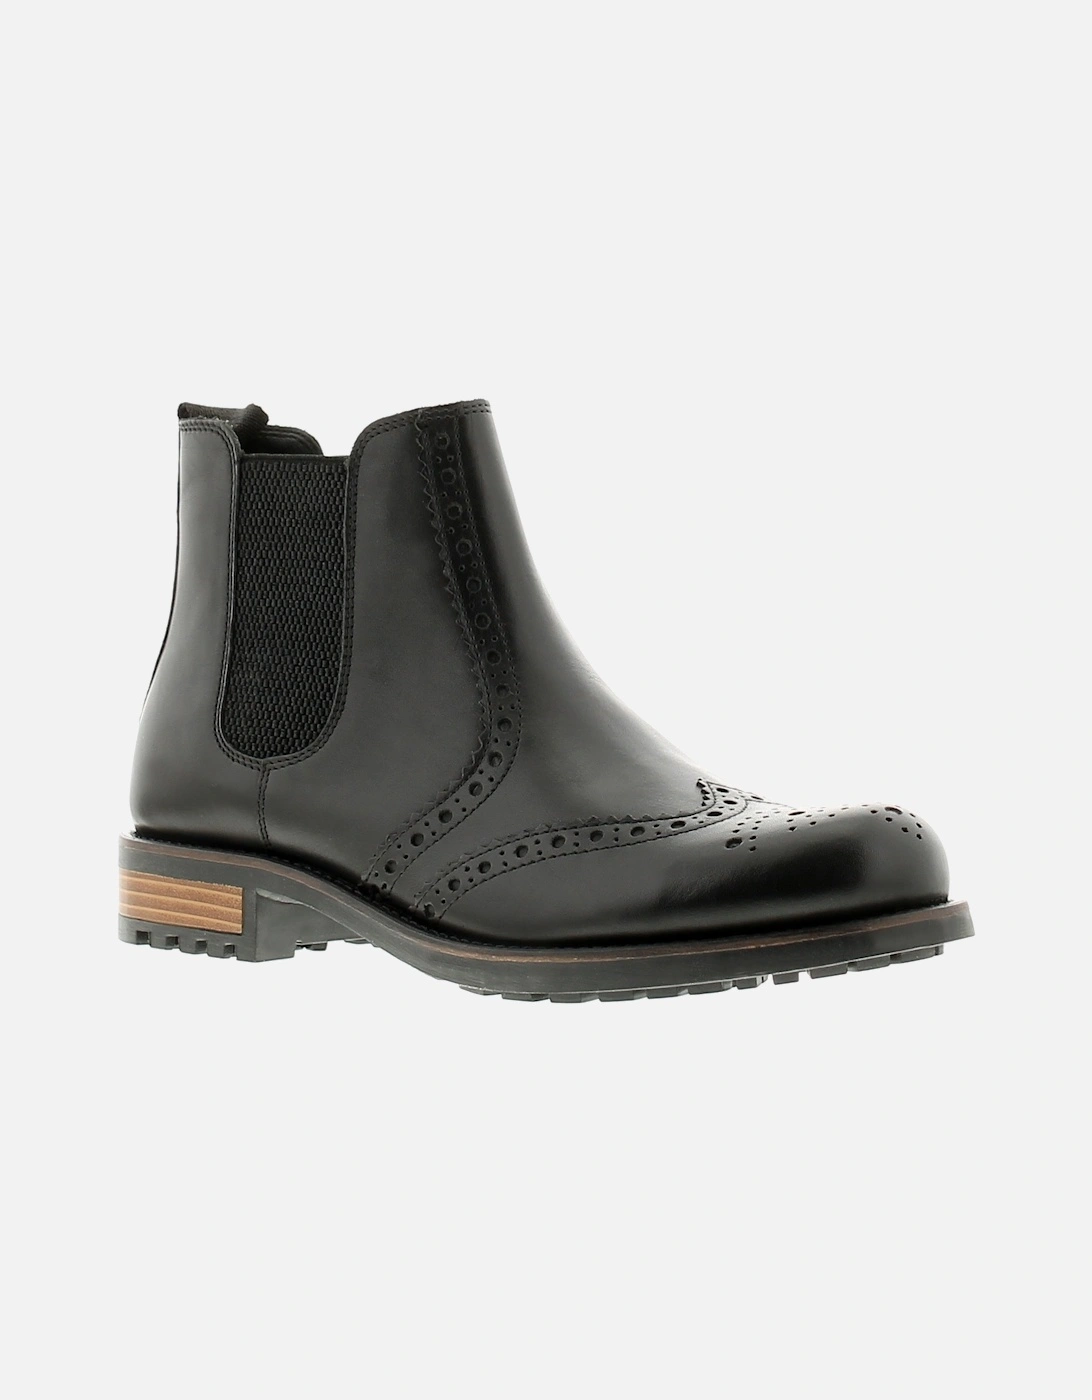 Mens Smart Boots Elgin Leather Slip On black UK Size, 6 of 5